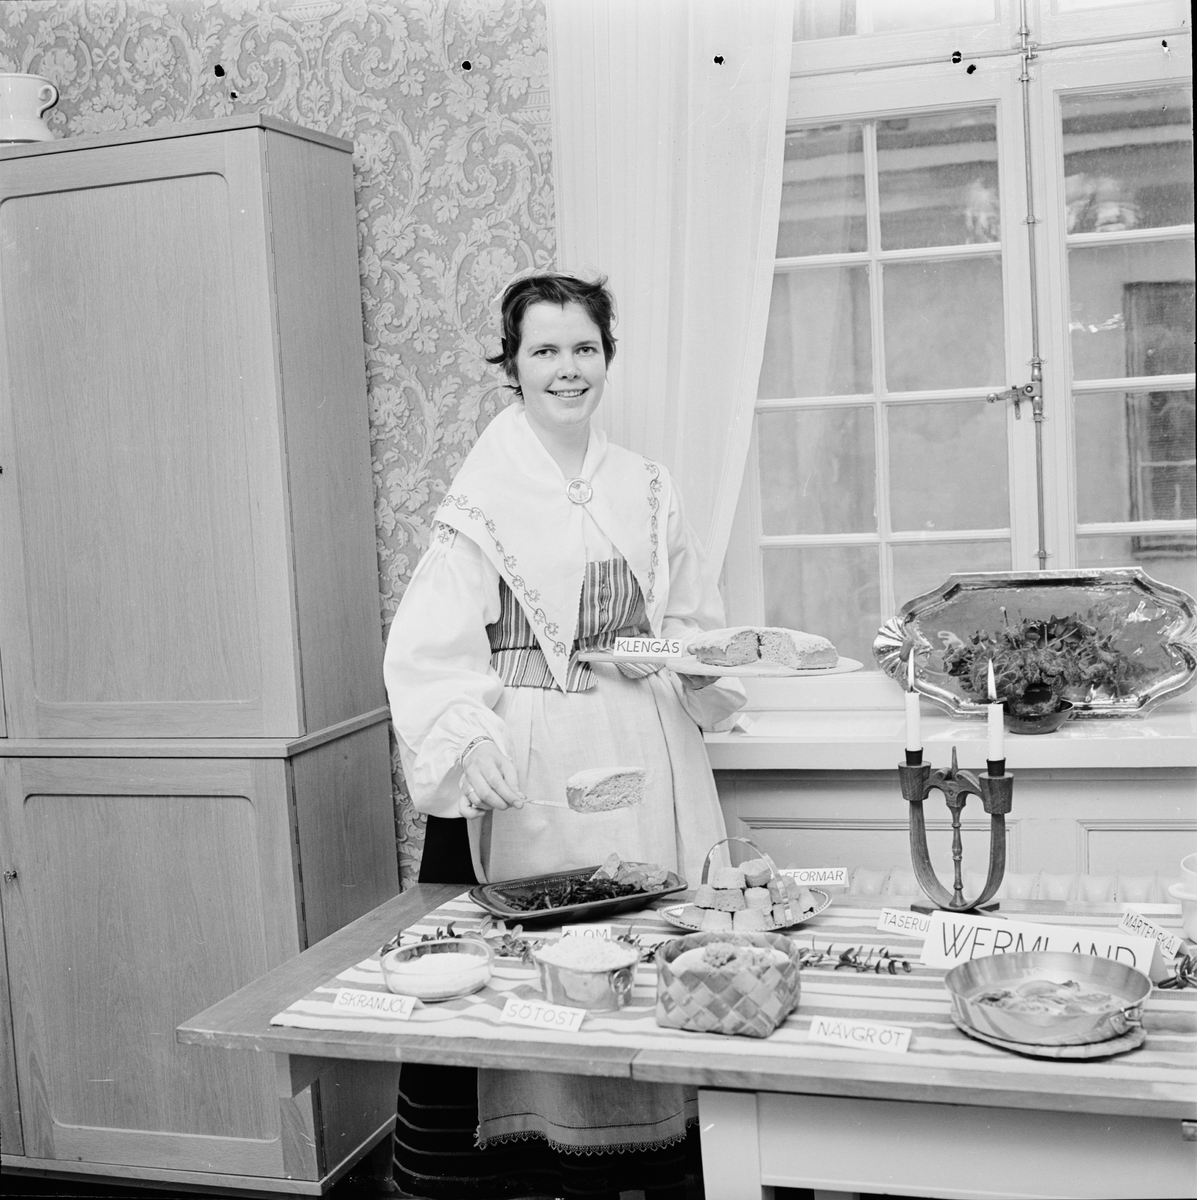 Fackskolan - "blivande hushållslärarinnor ställde ut landskapsrätter", Uppsala november 1964